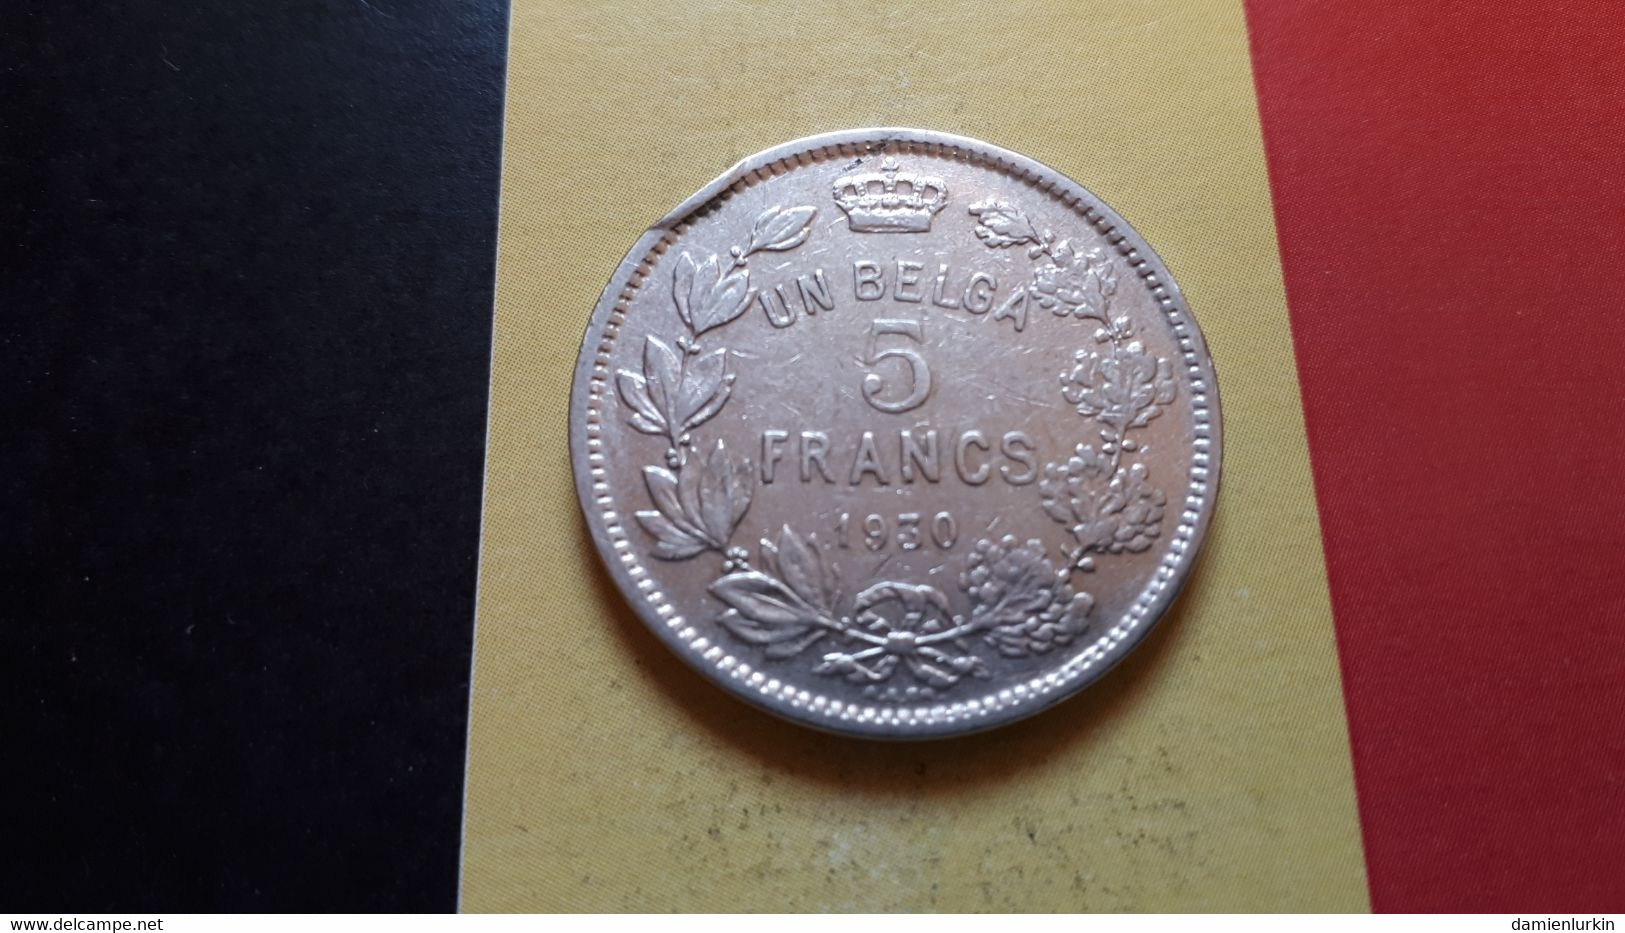 BELGIQUE ALBERT IER UN BELGA 5 FRANCS 1930 POSITION B - 5 Francs & 1 Belga